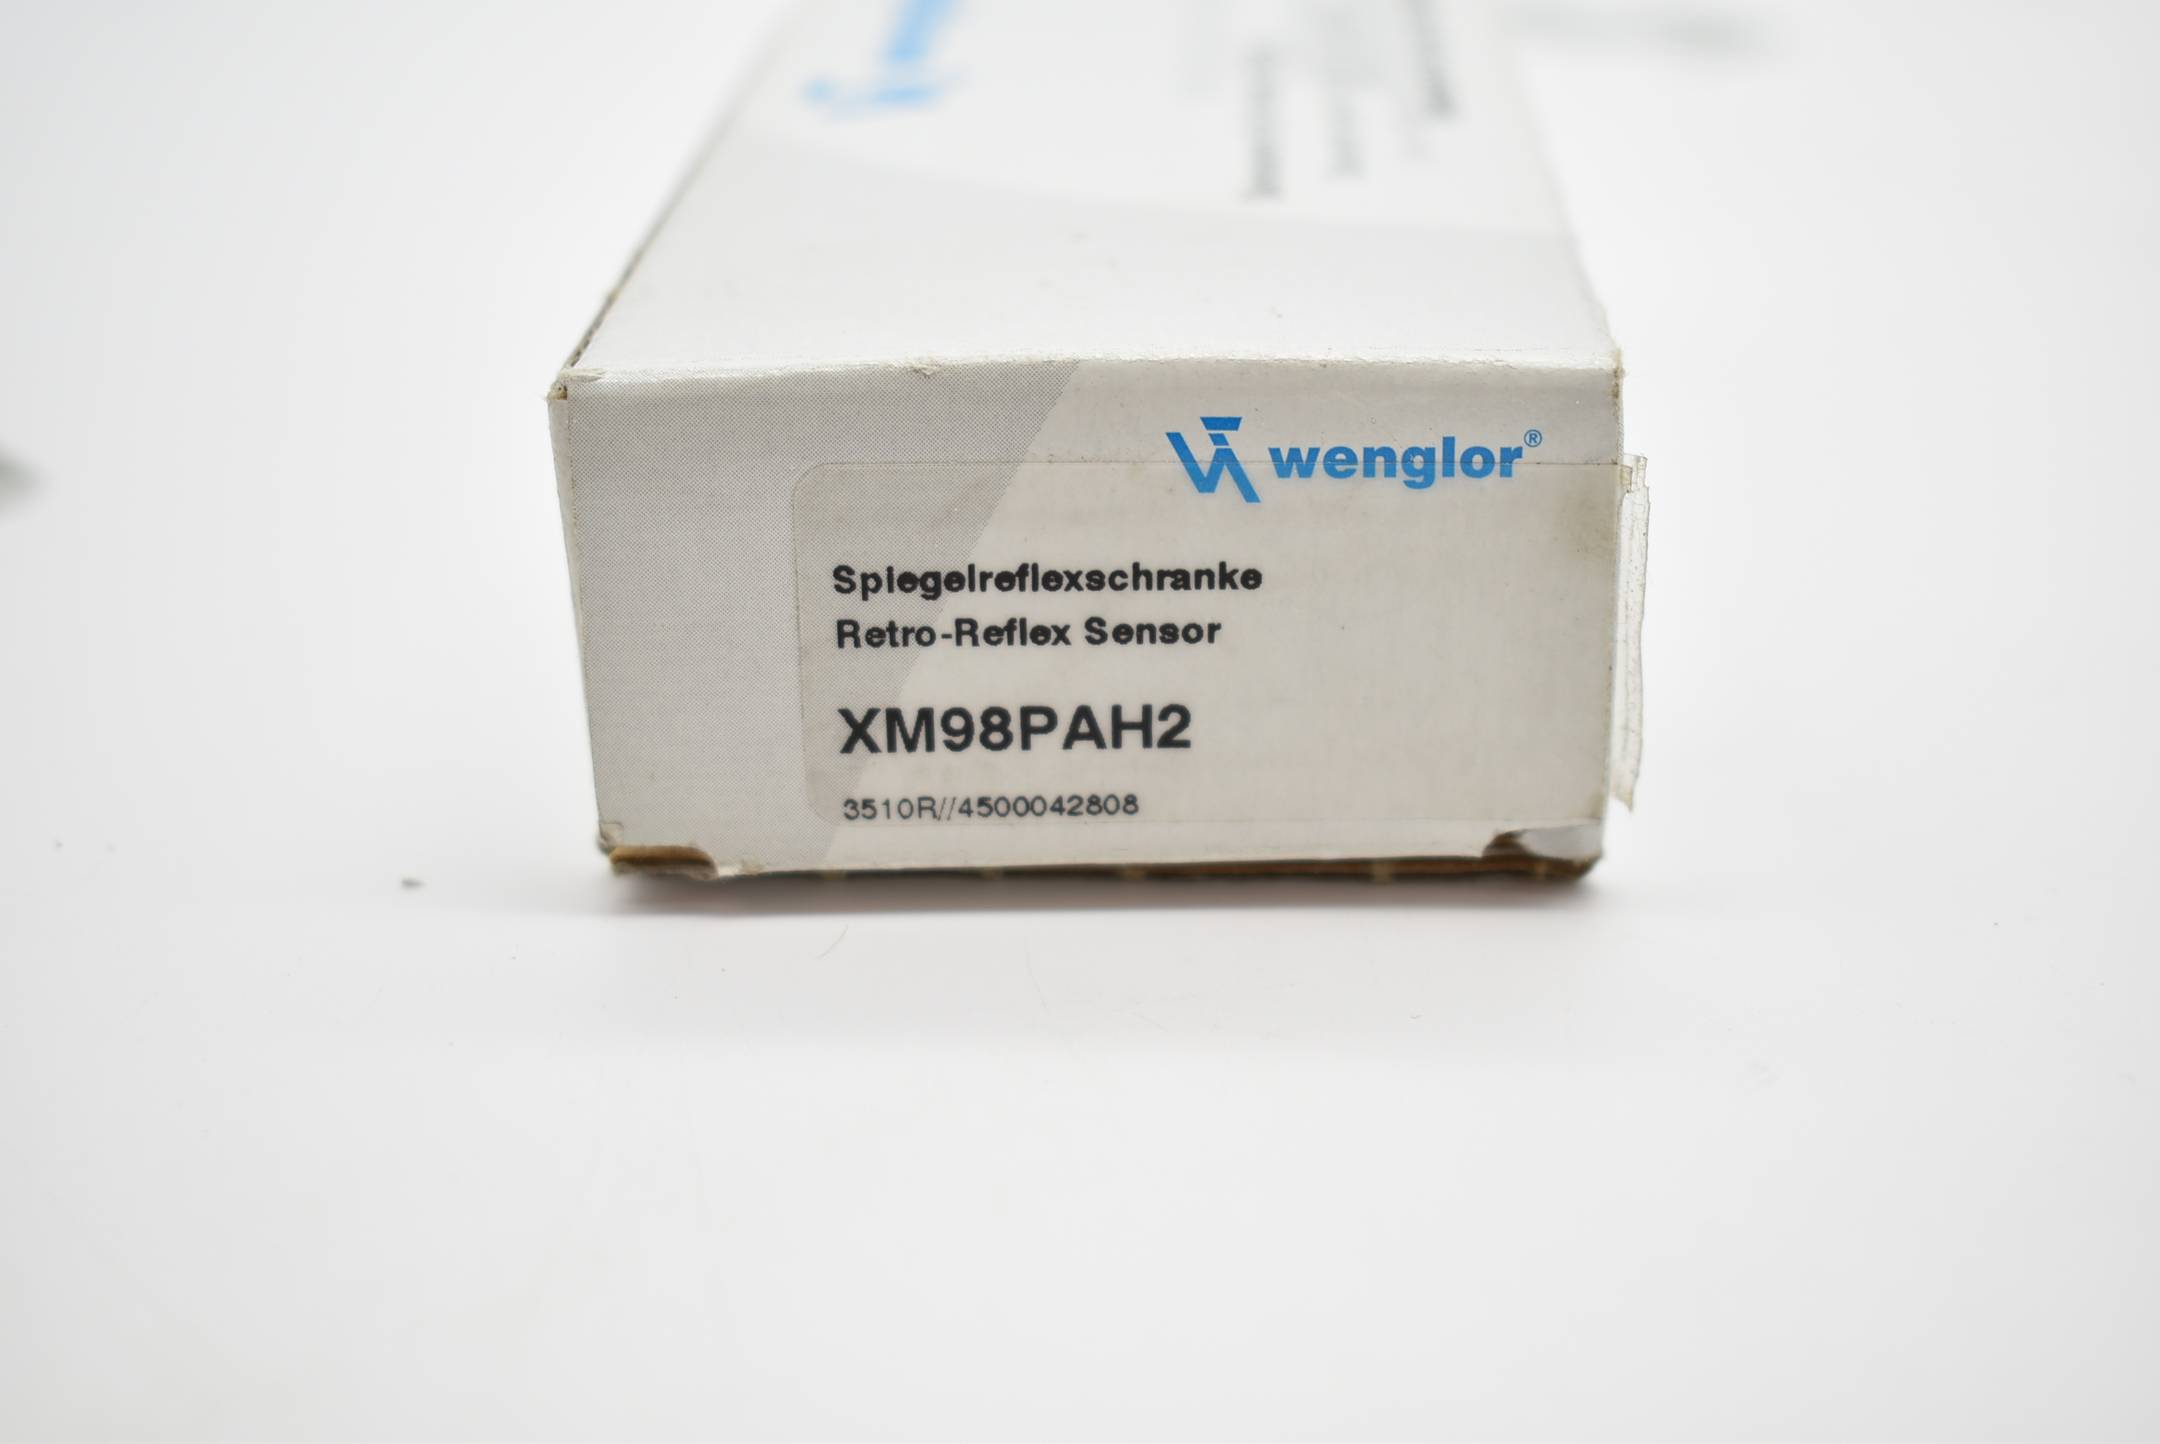 Wenglor Spiegelreflexschranke XM98PAH2